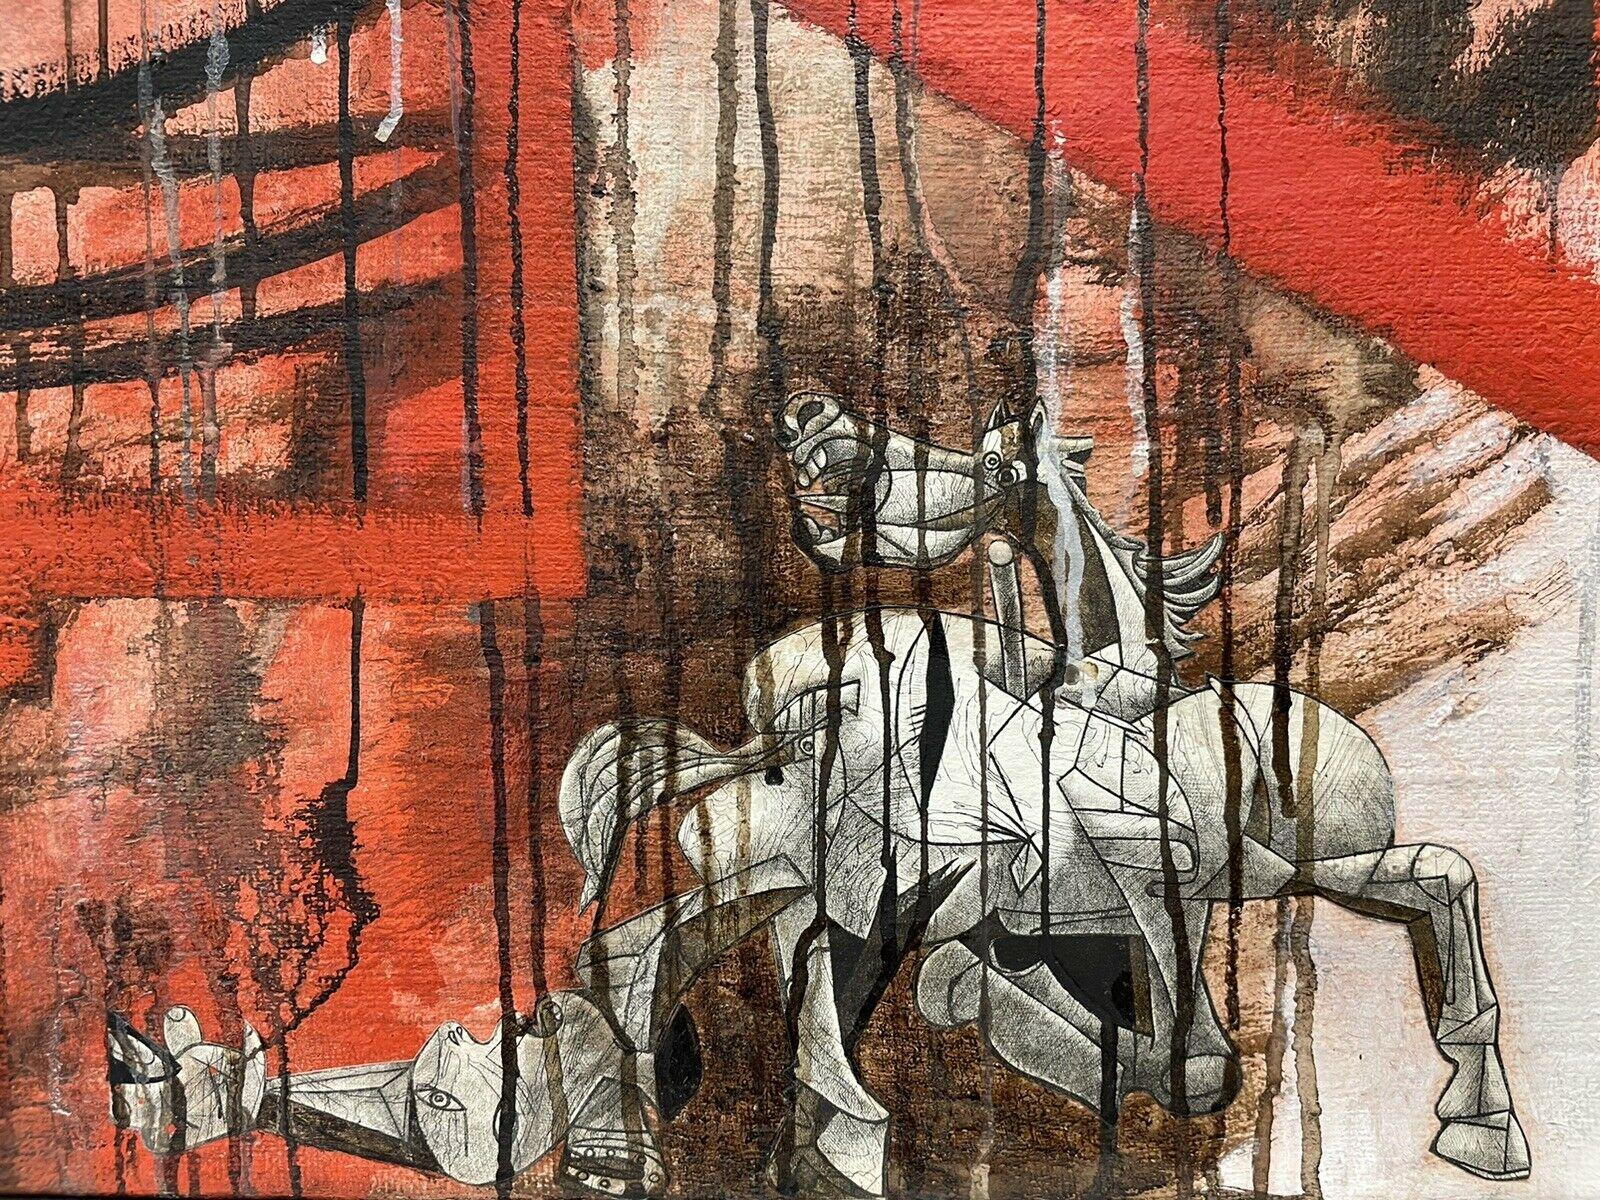 ILLUSTRATION FRANÇAISE - MEMORIES D'UNE SPAINE INSPIRÉE PAR GUERNICA PICASSO - Expressionnisme abstrait Painting par Claude Lagouche